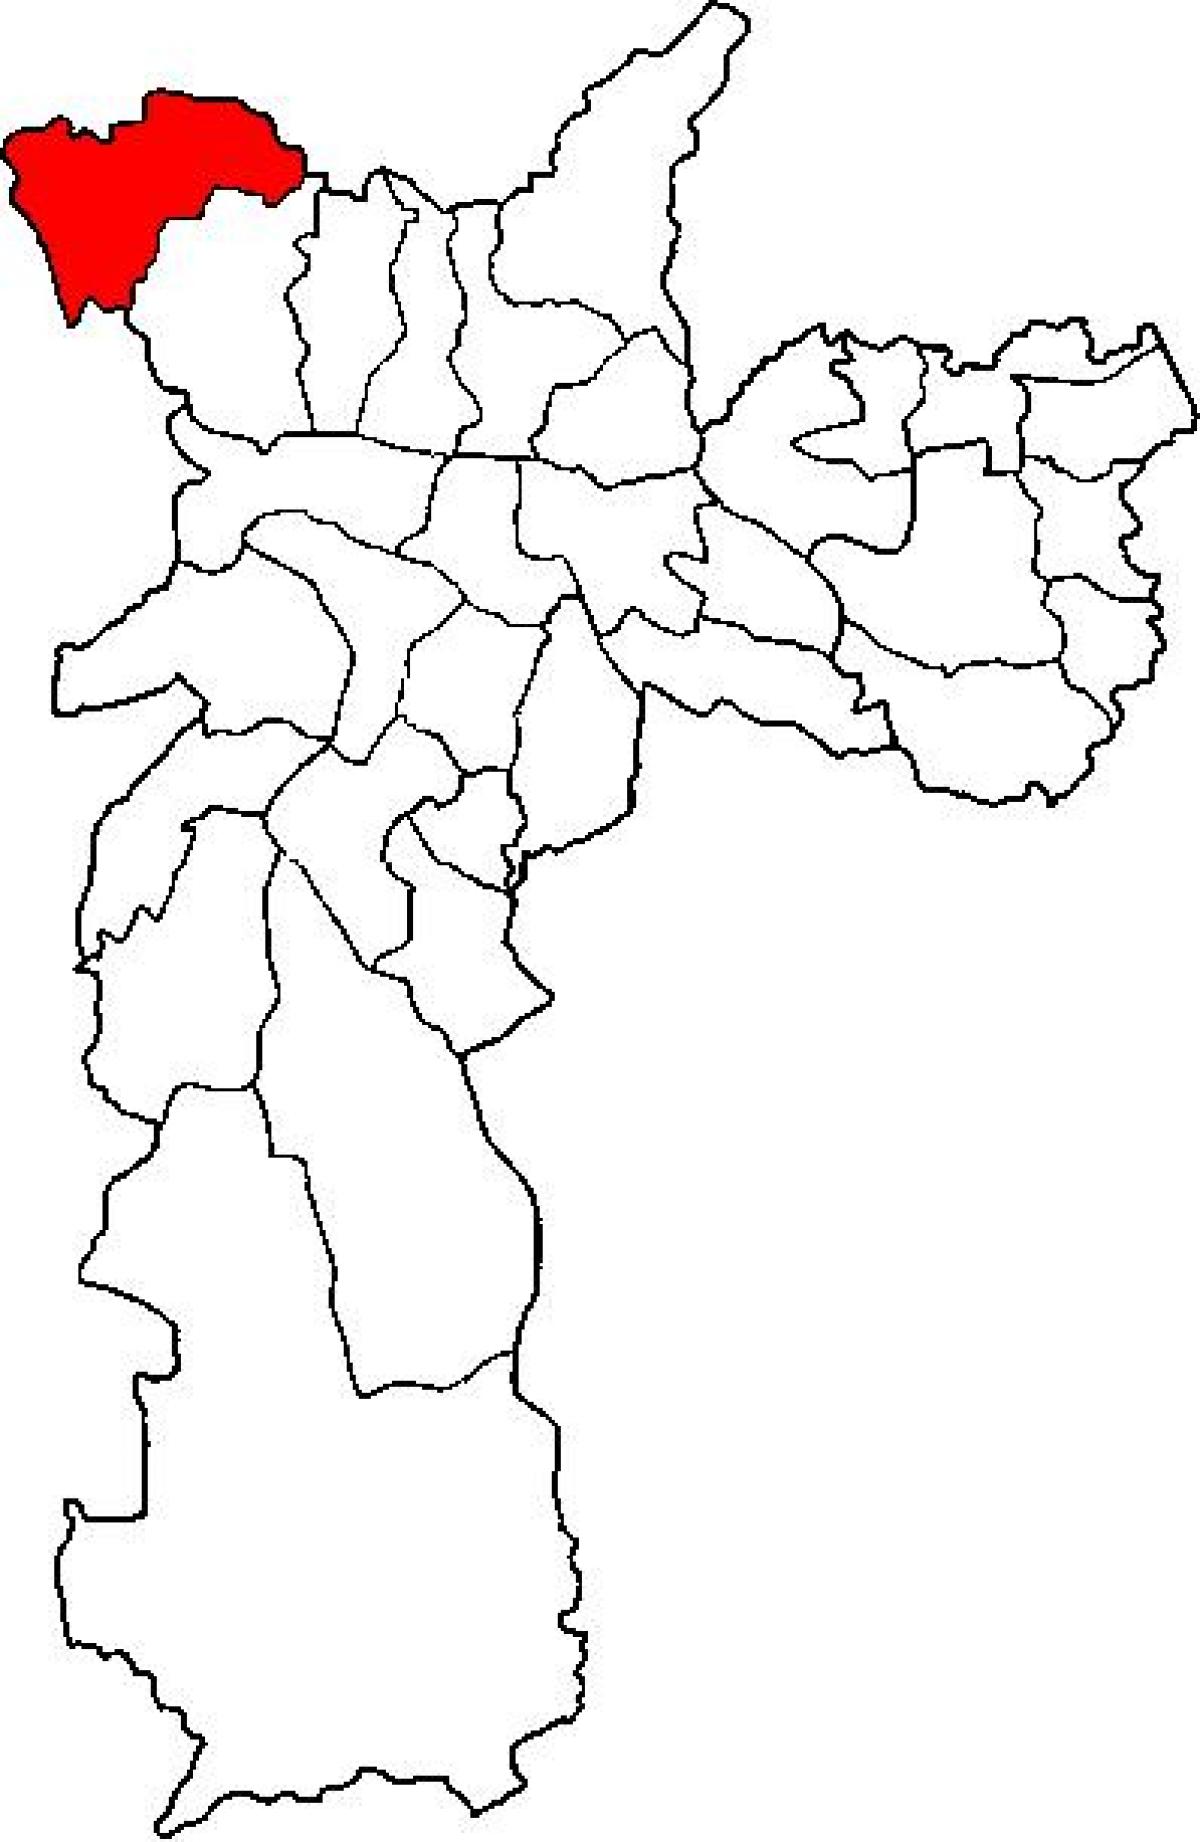 Քարտեզ ենթաօրենսդրական պրեֆեկտուրայում Перус Սան